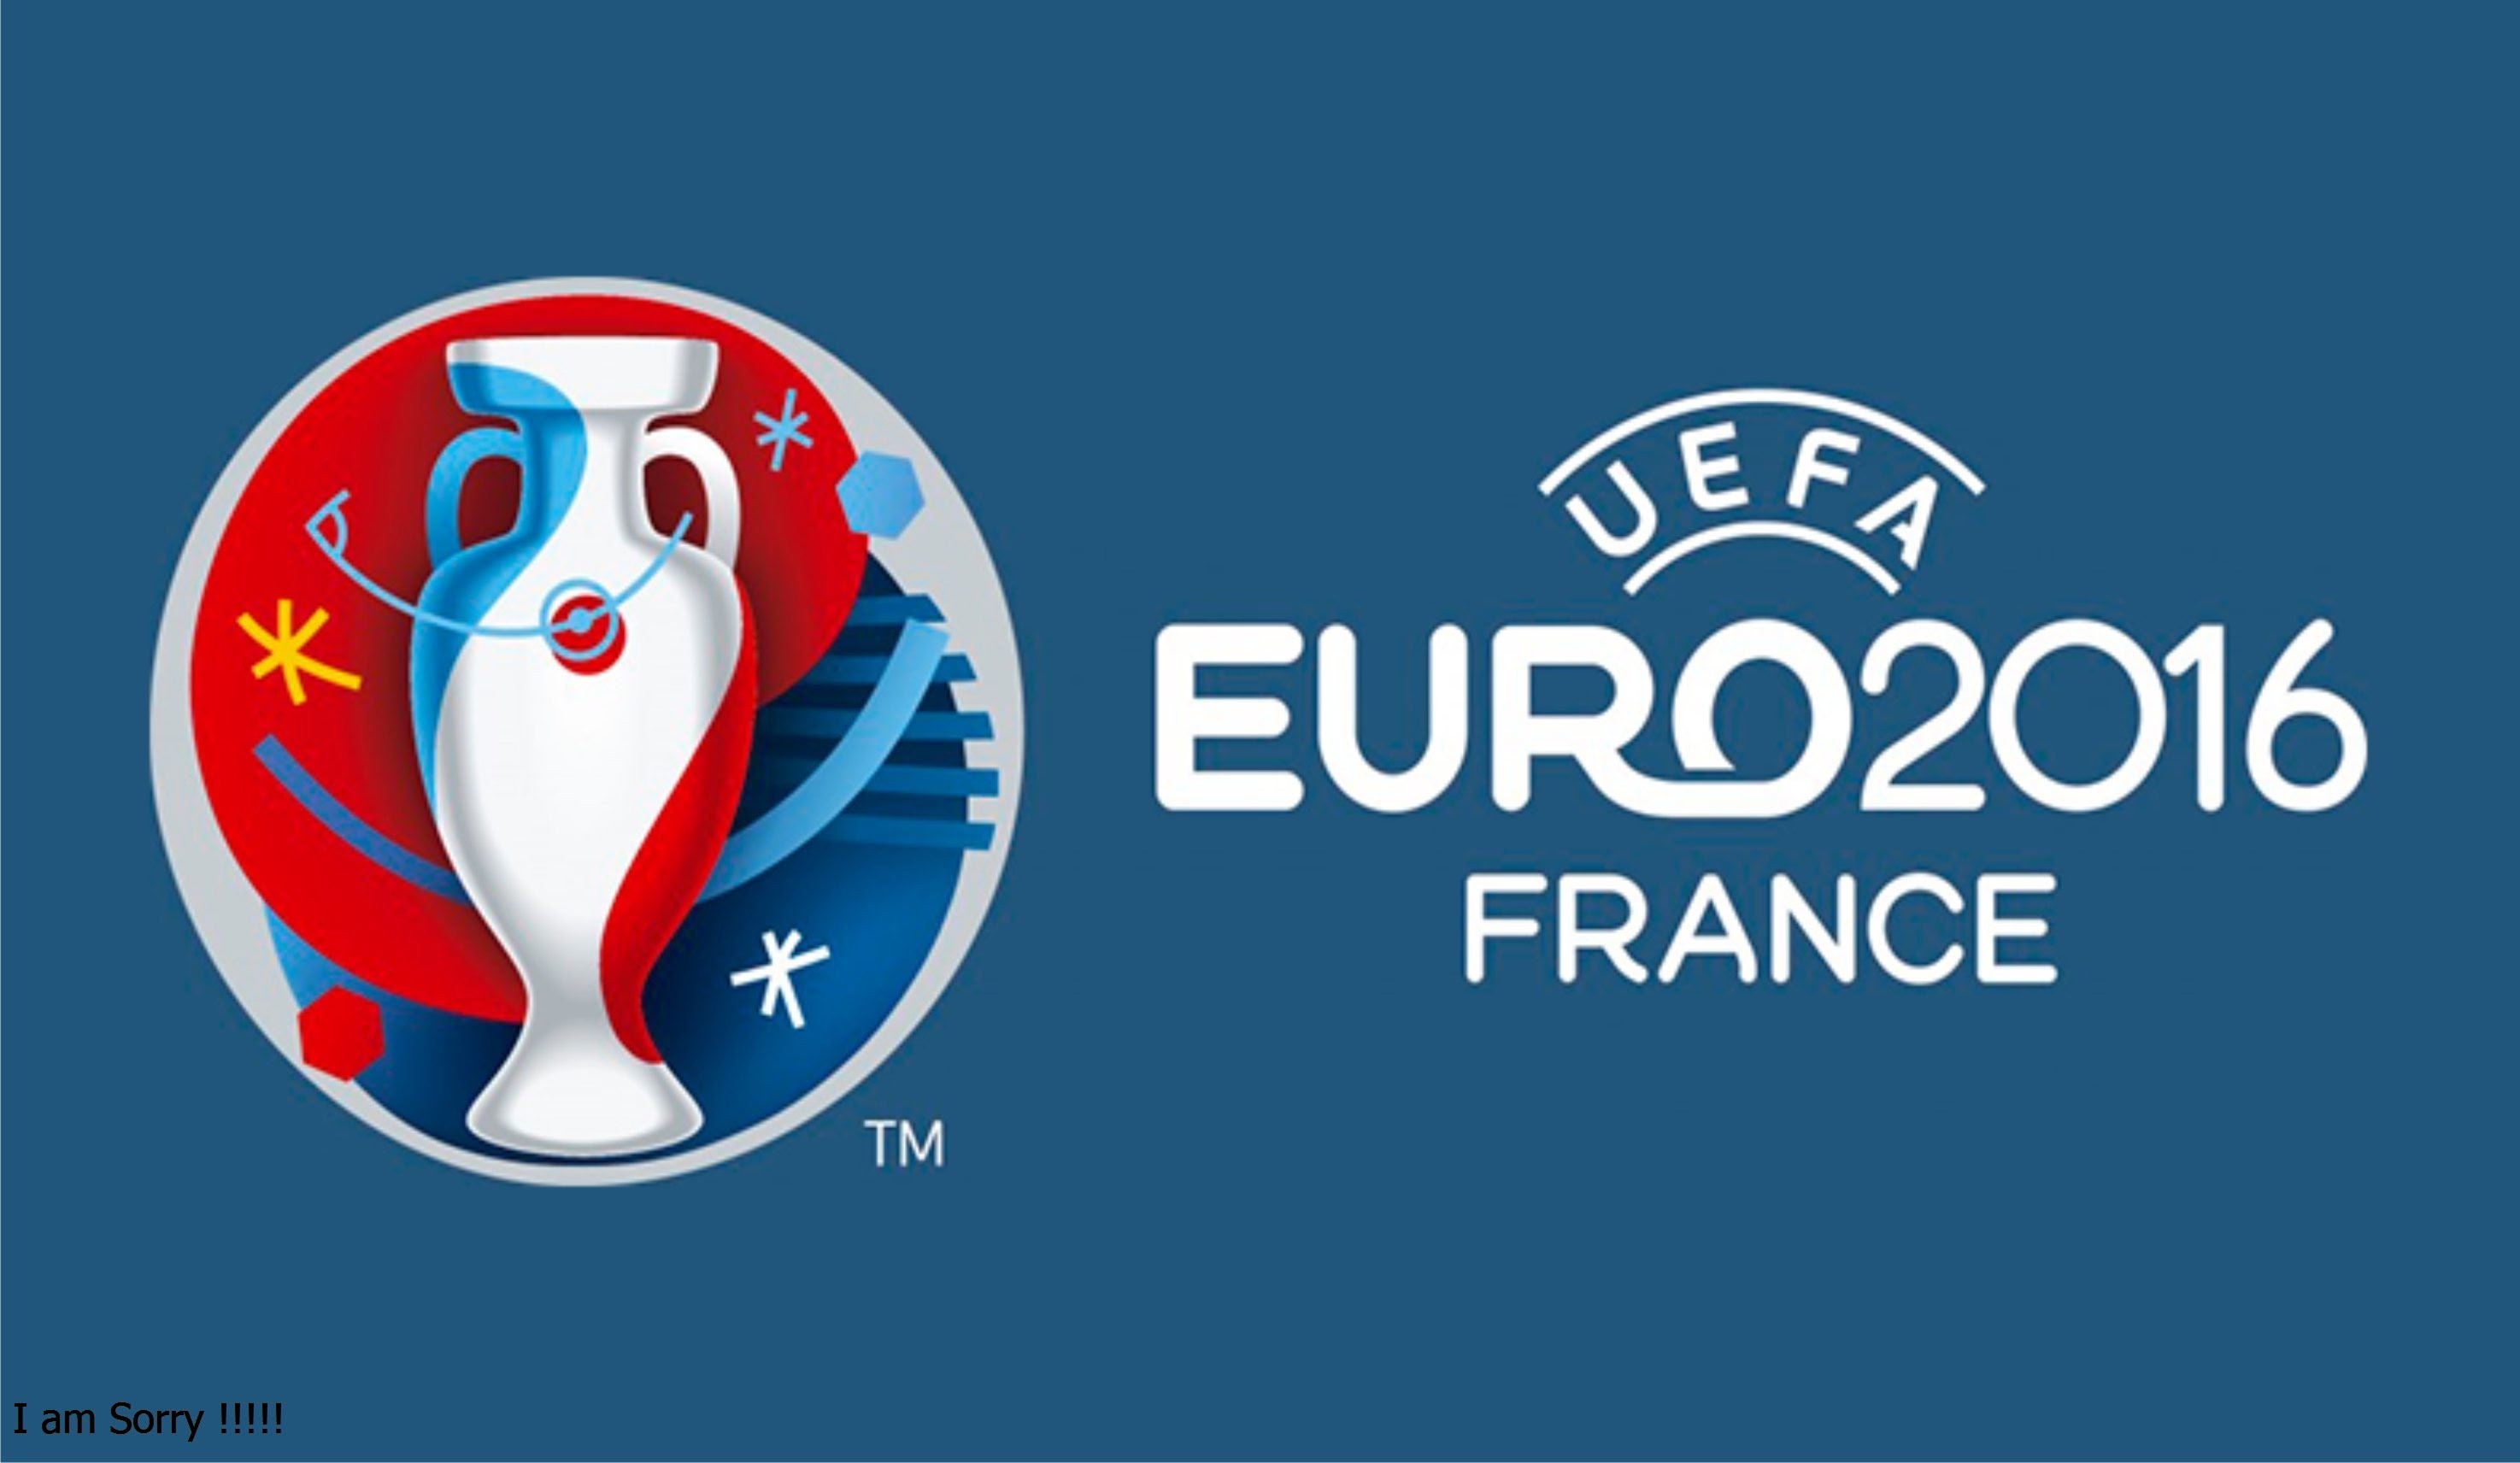 Скачать обои Евро 2016 на телефон бесплатно